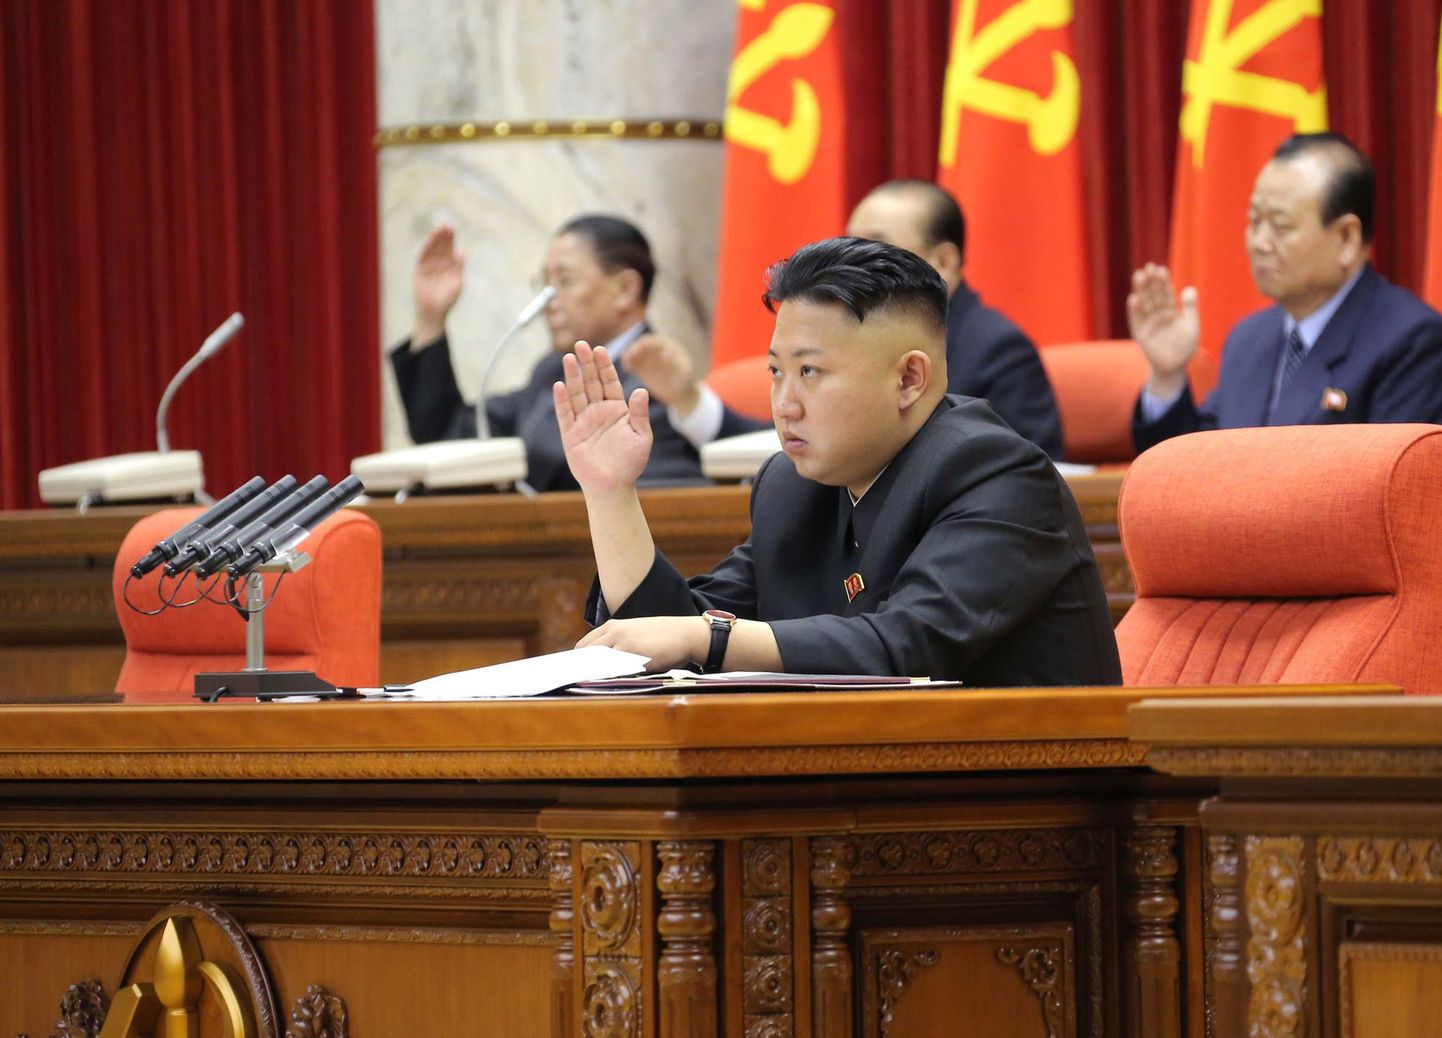 Põhja-Korea liider Kim Jong-Un: populaarne riik ja riigipea 1.aprilli libauudistes.